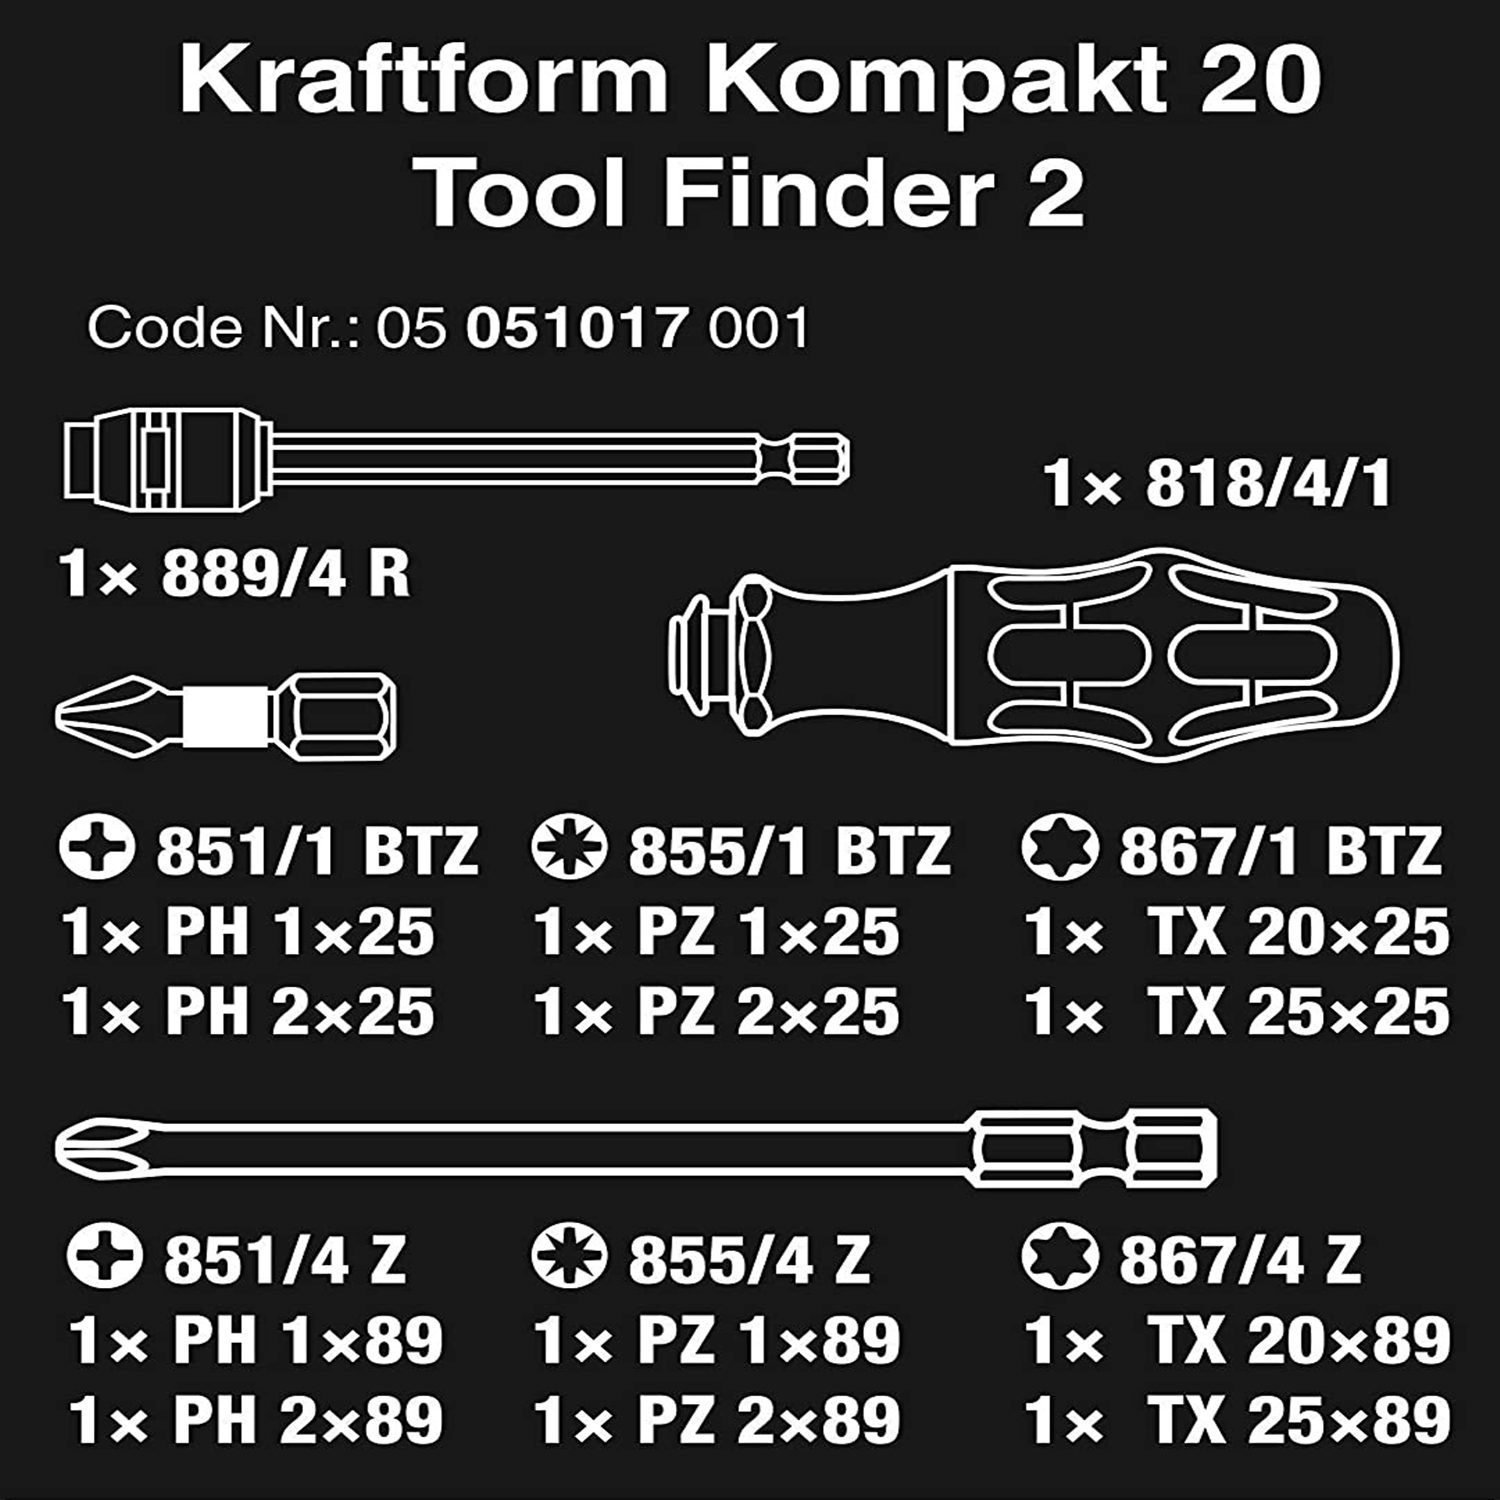 Bộ dụng cụ đa năng mở vặn vít  KK  20 Tool Finder 2 gồm 13 chi tiết với các đầu vít ngắn dài 25mm và đầu vít dài 89mm kèm túi vải  Wera 05051017001